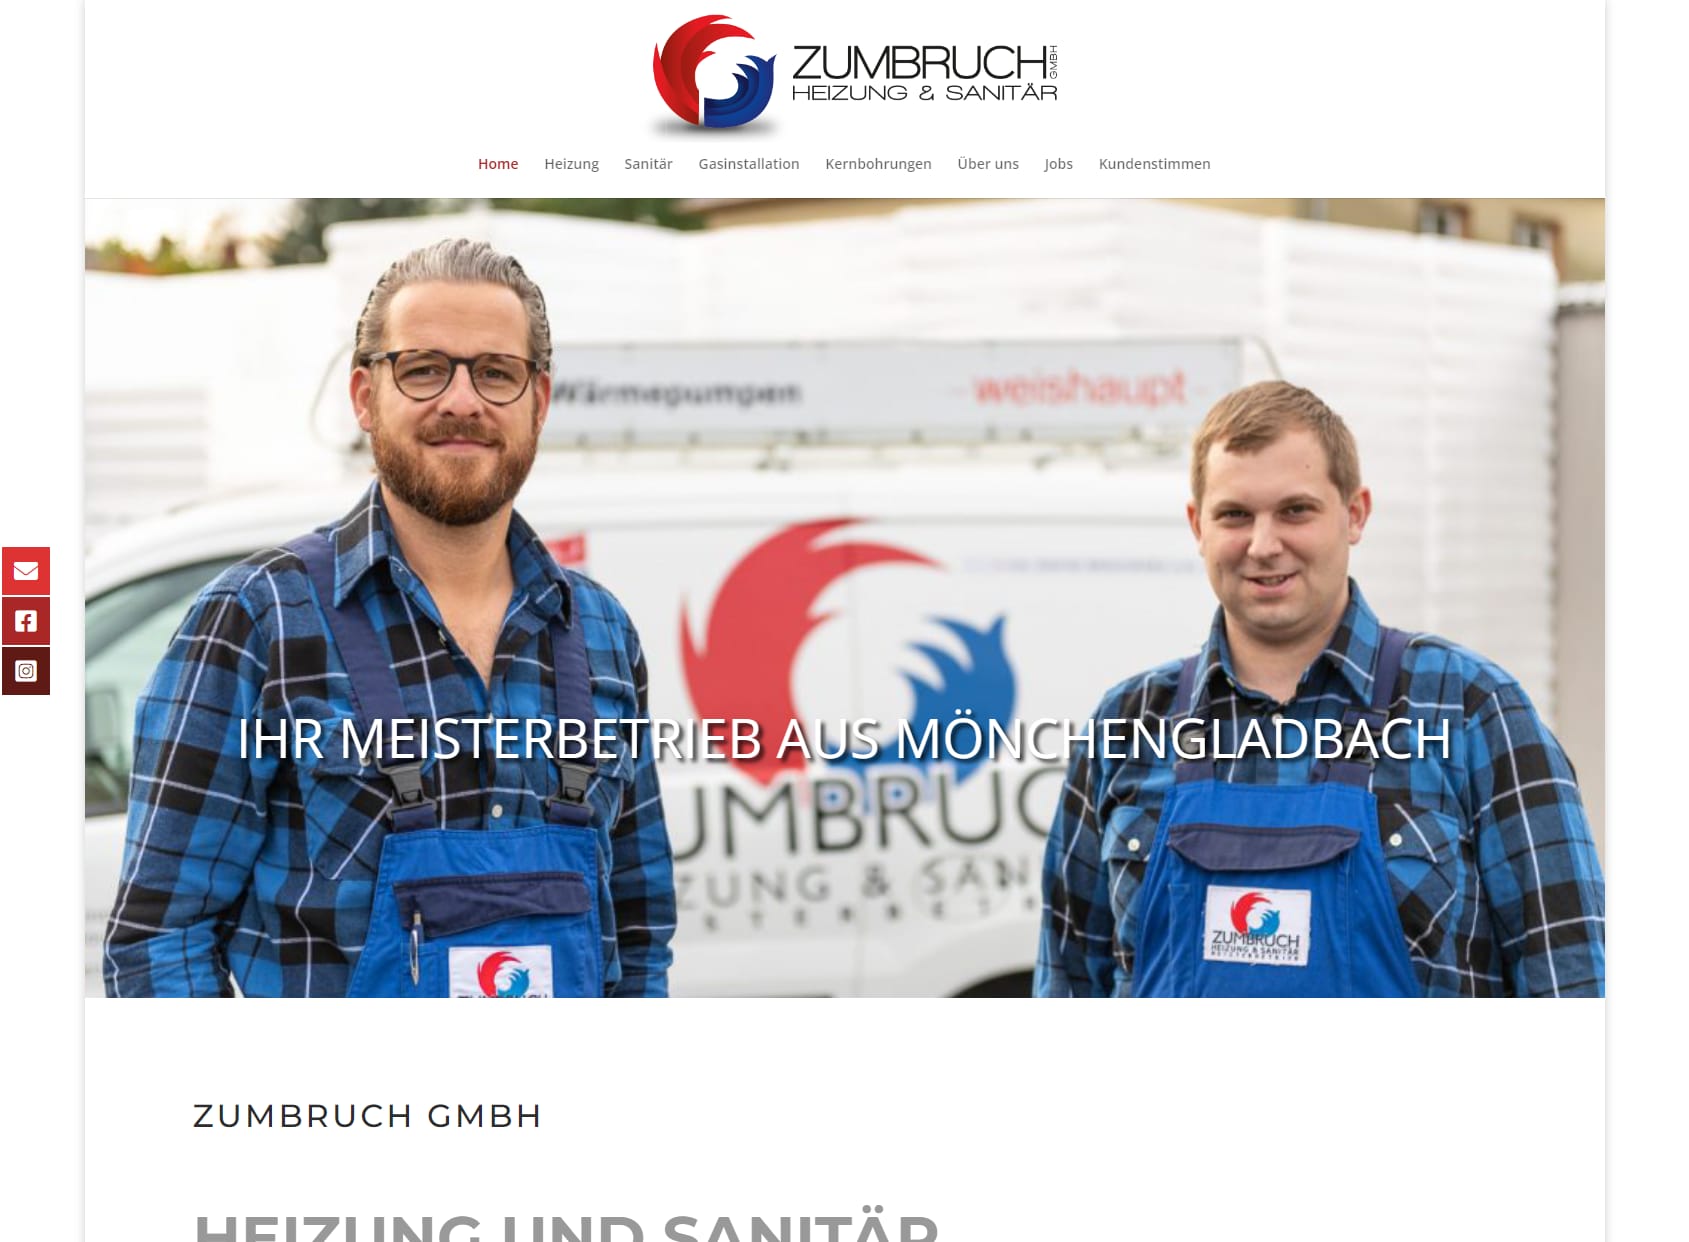 Zumbruch GmbH Heizung & Sanitär